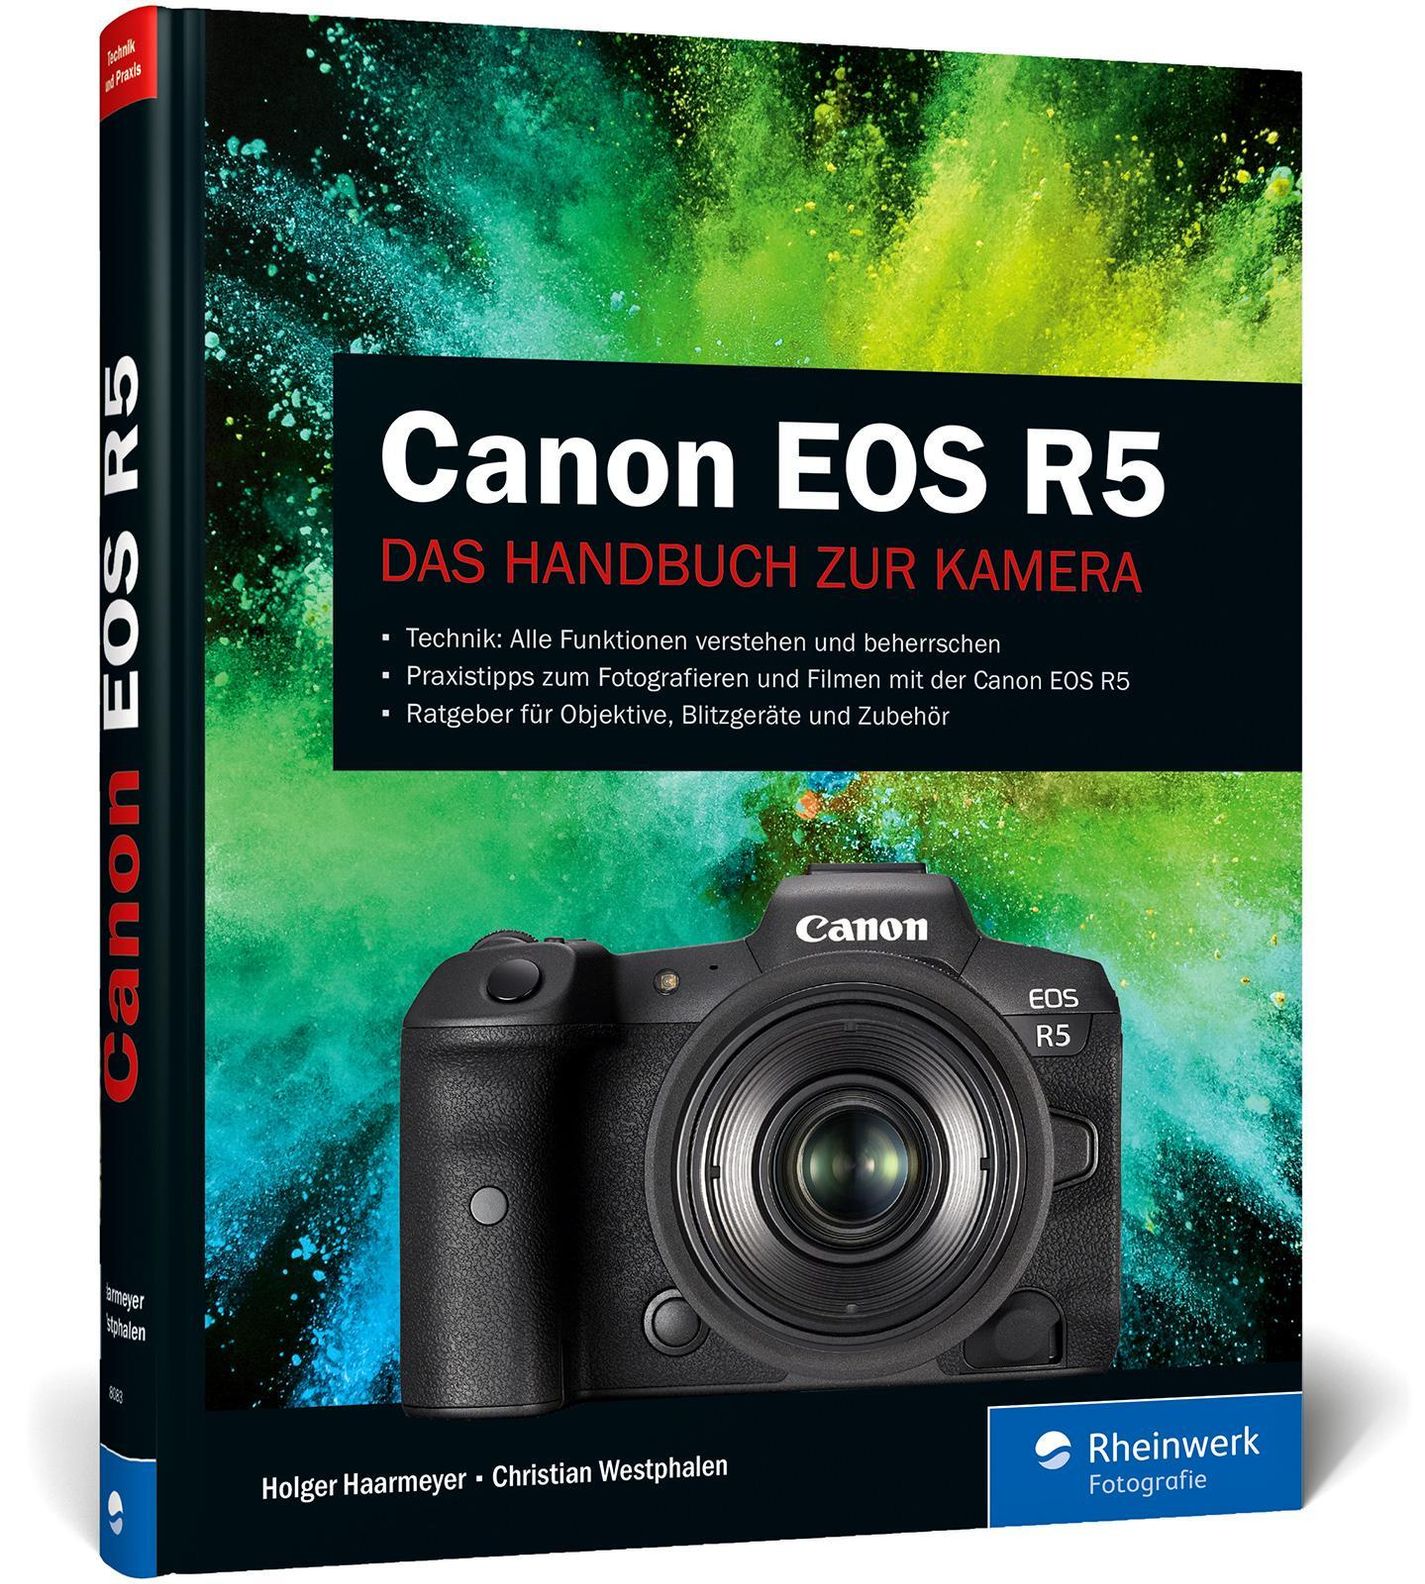 Canon EOS R5 Buch von Holger Haarmeyer versandkostenfrei bei Weltbild.ch